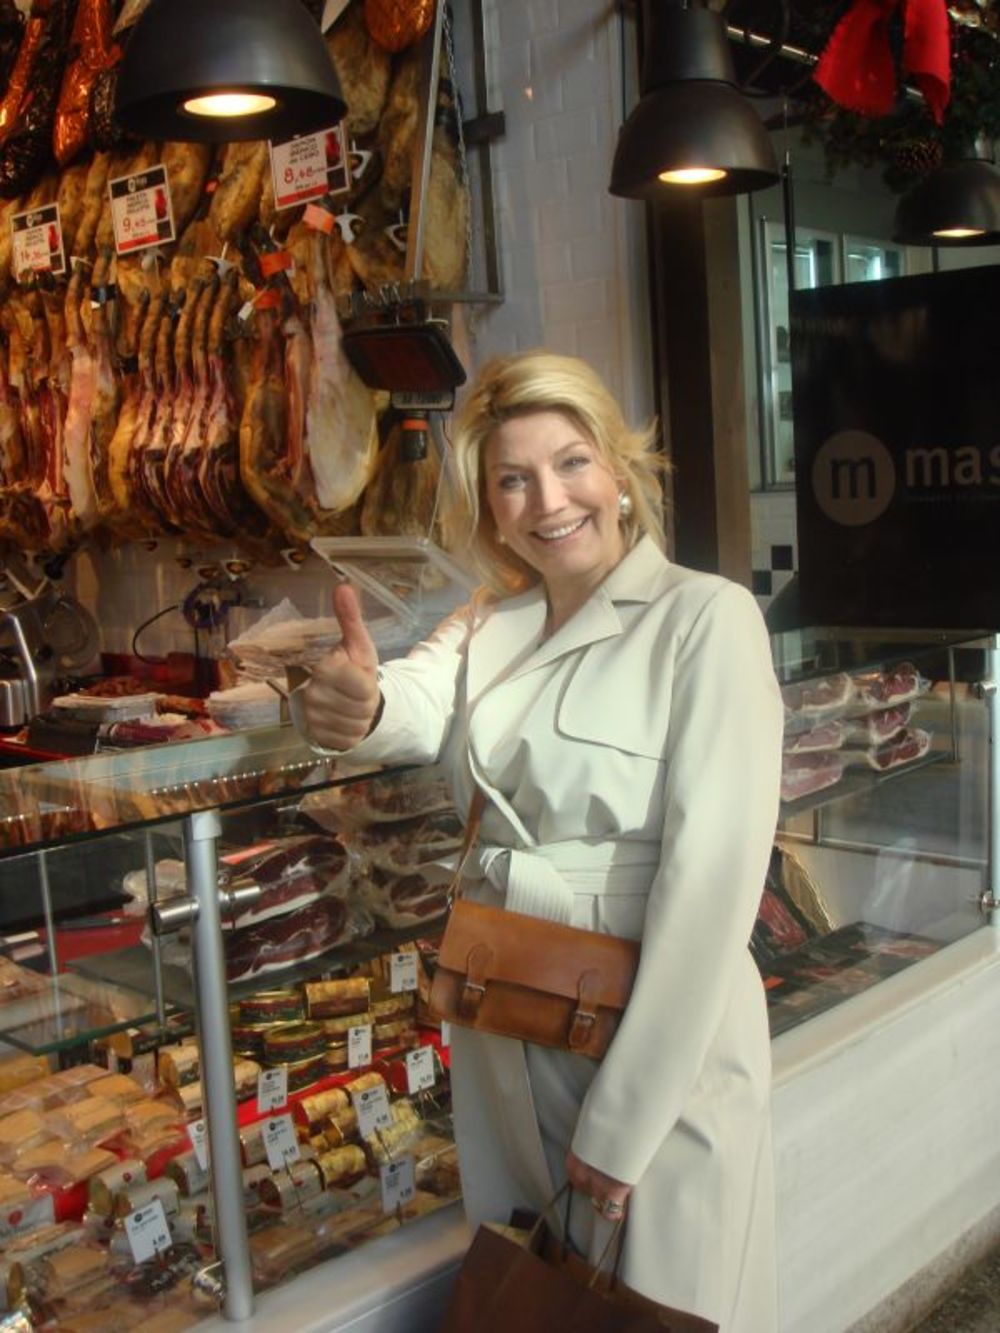 Popularna voditeljka nacionalne televizije Košava uživala je odmarajući se u Madridu sa svojim verenikom Simeonom.